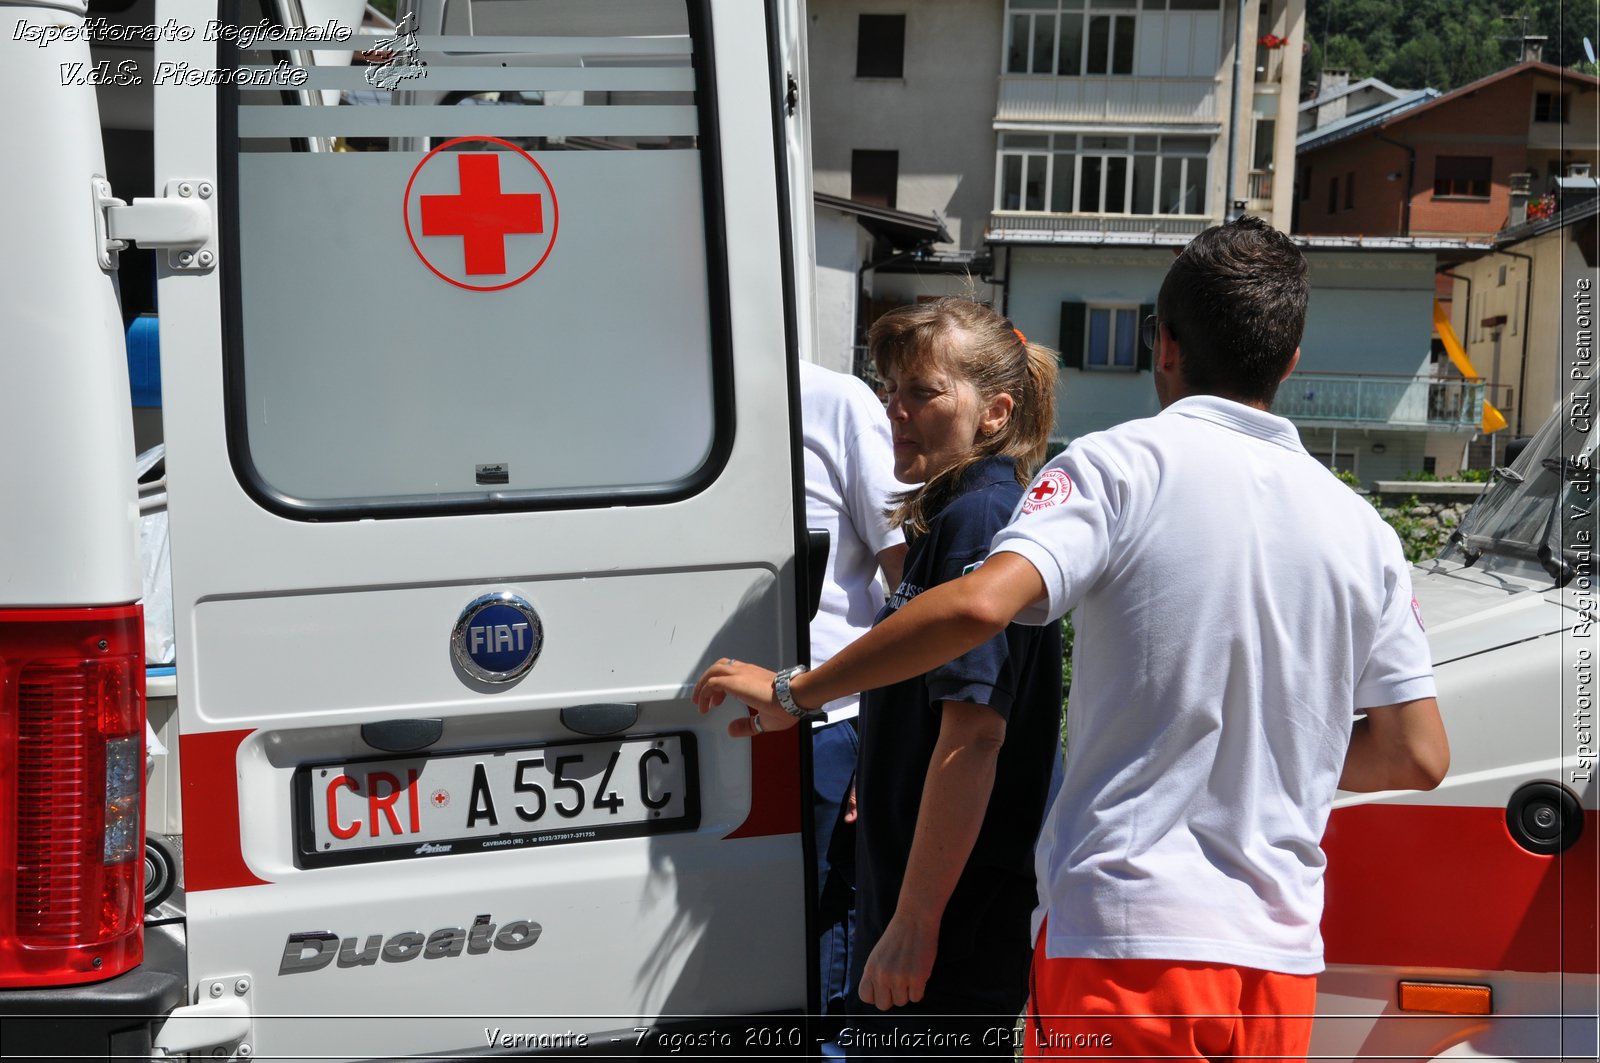 Vernante  - 7 agosto 2010 - Simulazione CRI Limone -  Croce Rossa Italiana - Ispettorato Regionale Volontari del Soccorso Piemonte